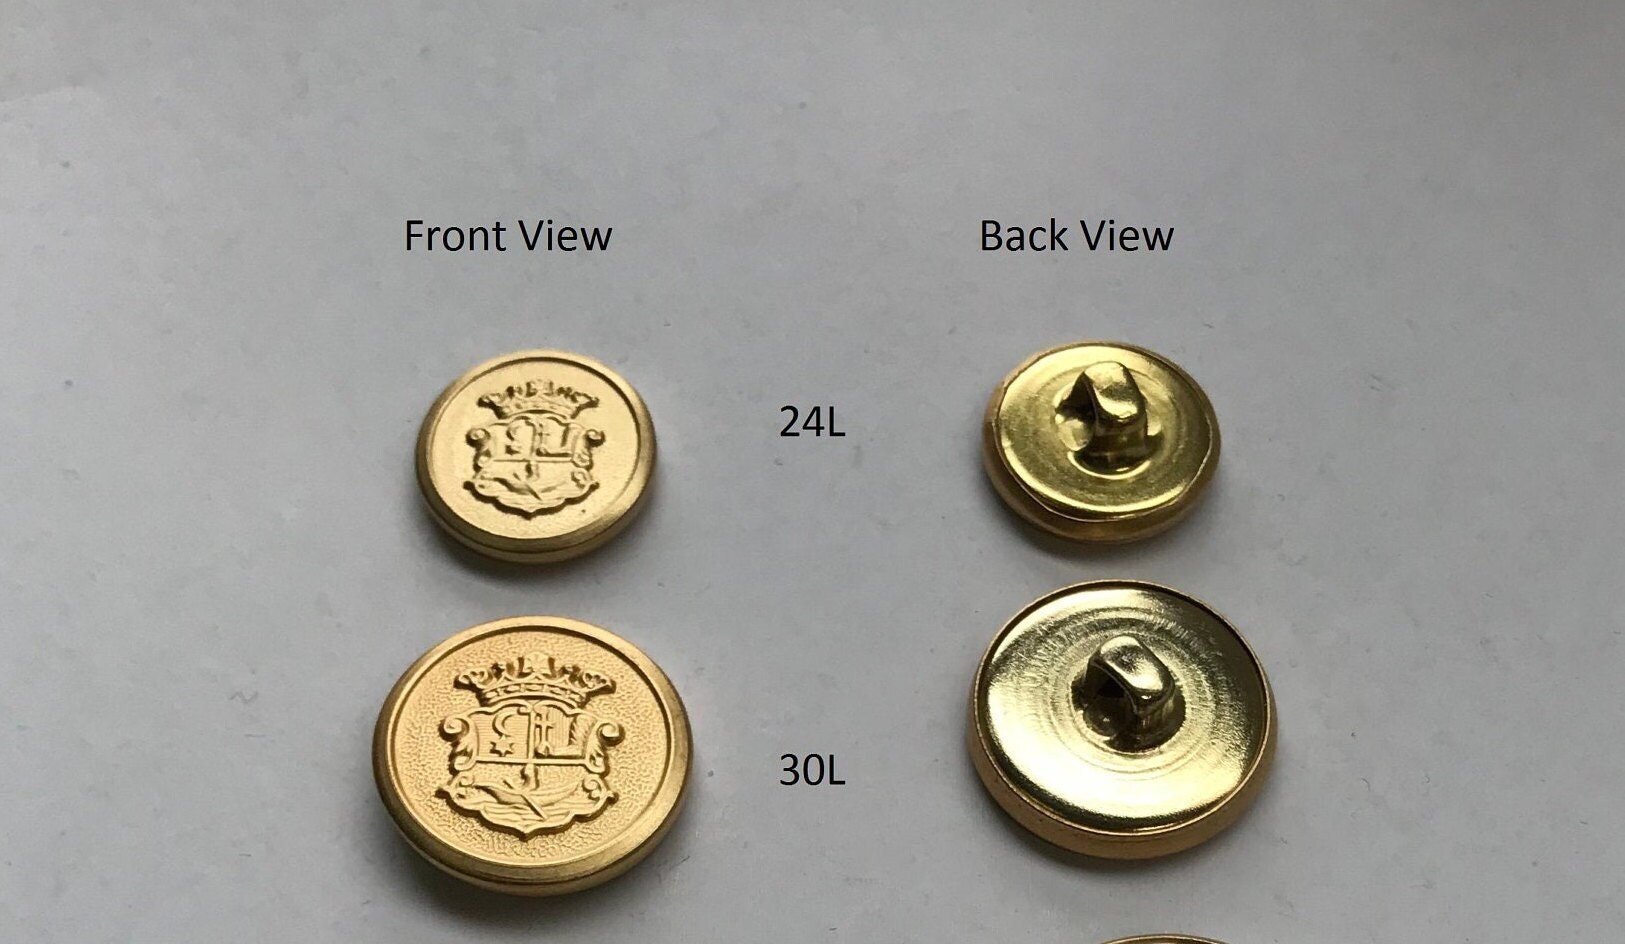 6 X Heavy Dark Bronze Metal Coat of Arms Buttons, Crest Buttons, Metal  Military Buttons, Metal Insignia Buttons, Bronze Coat Buttons 